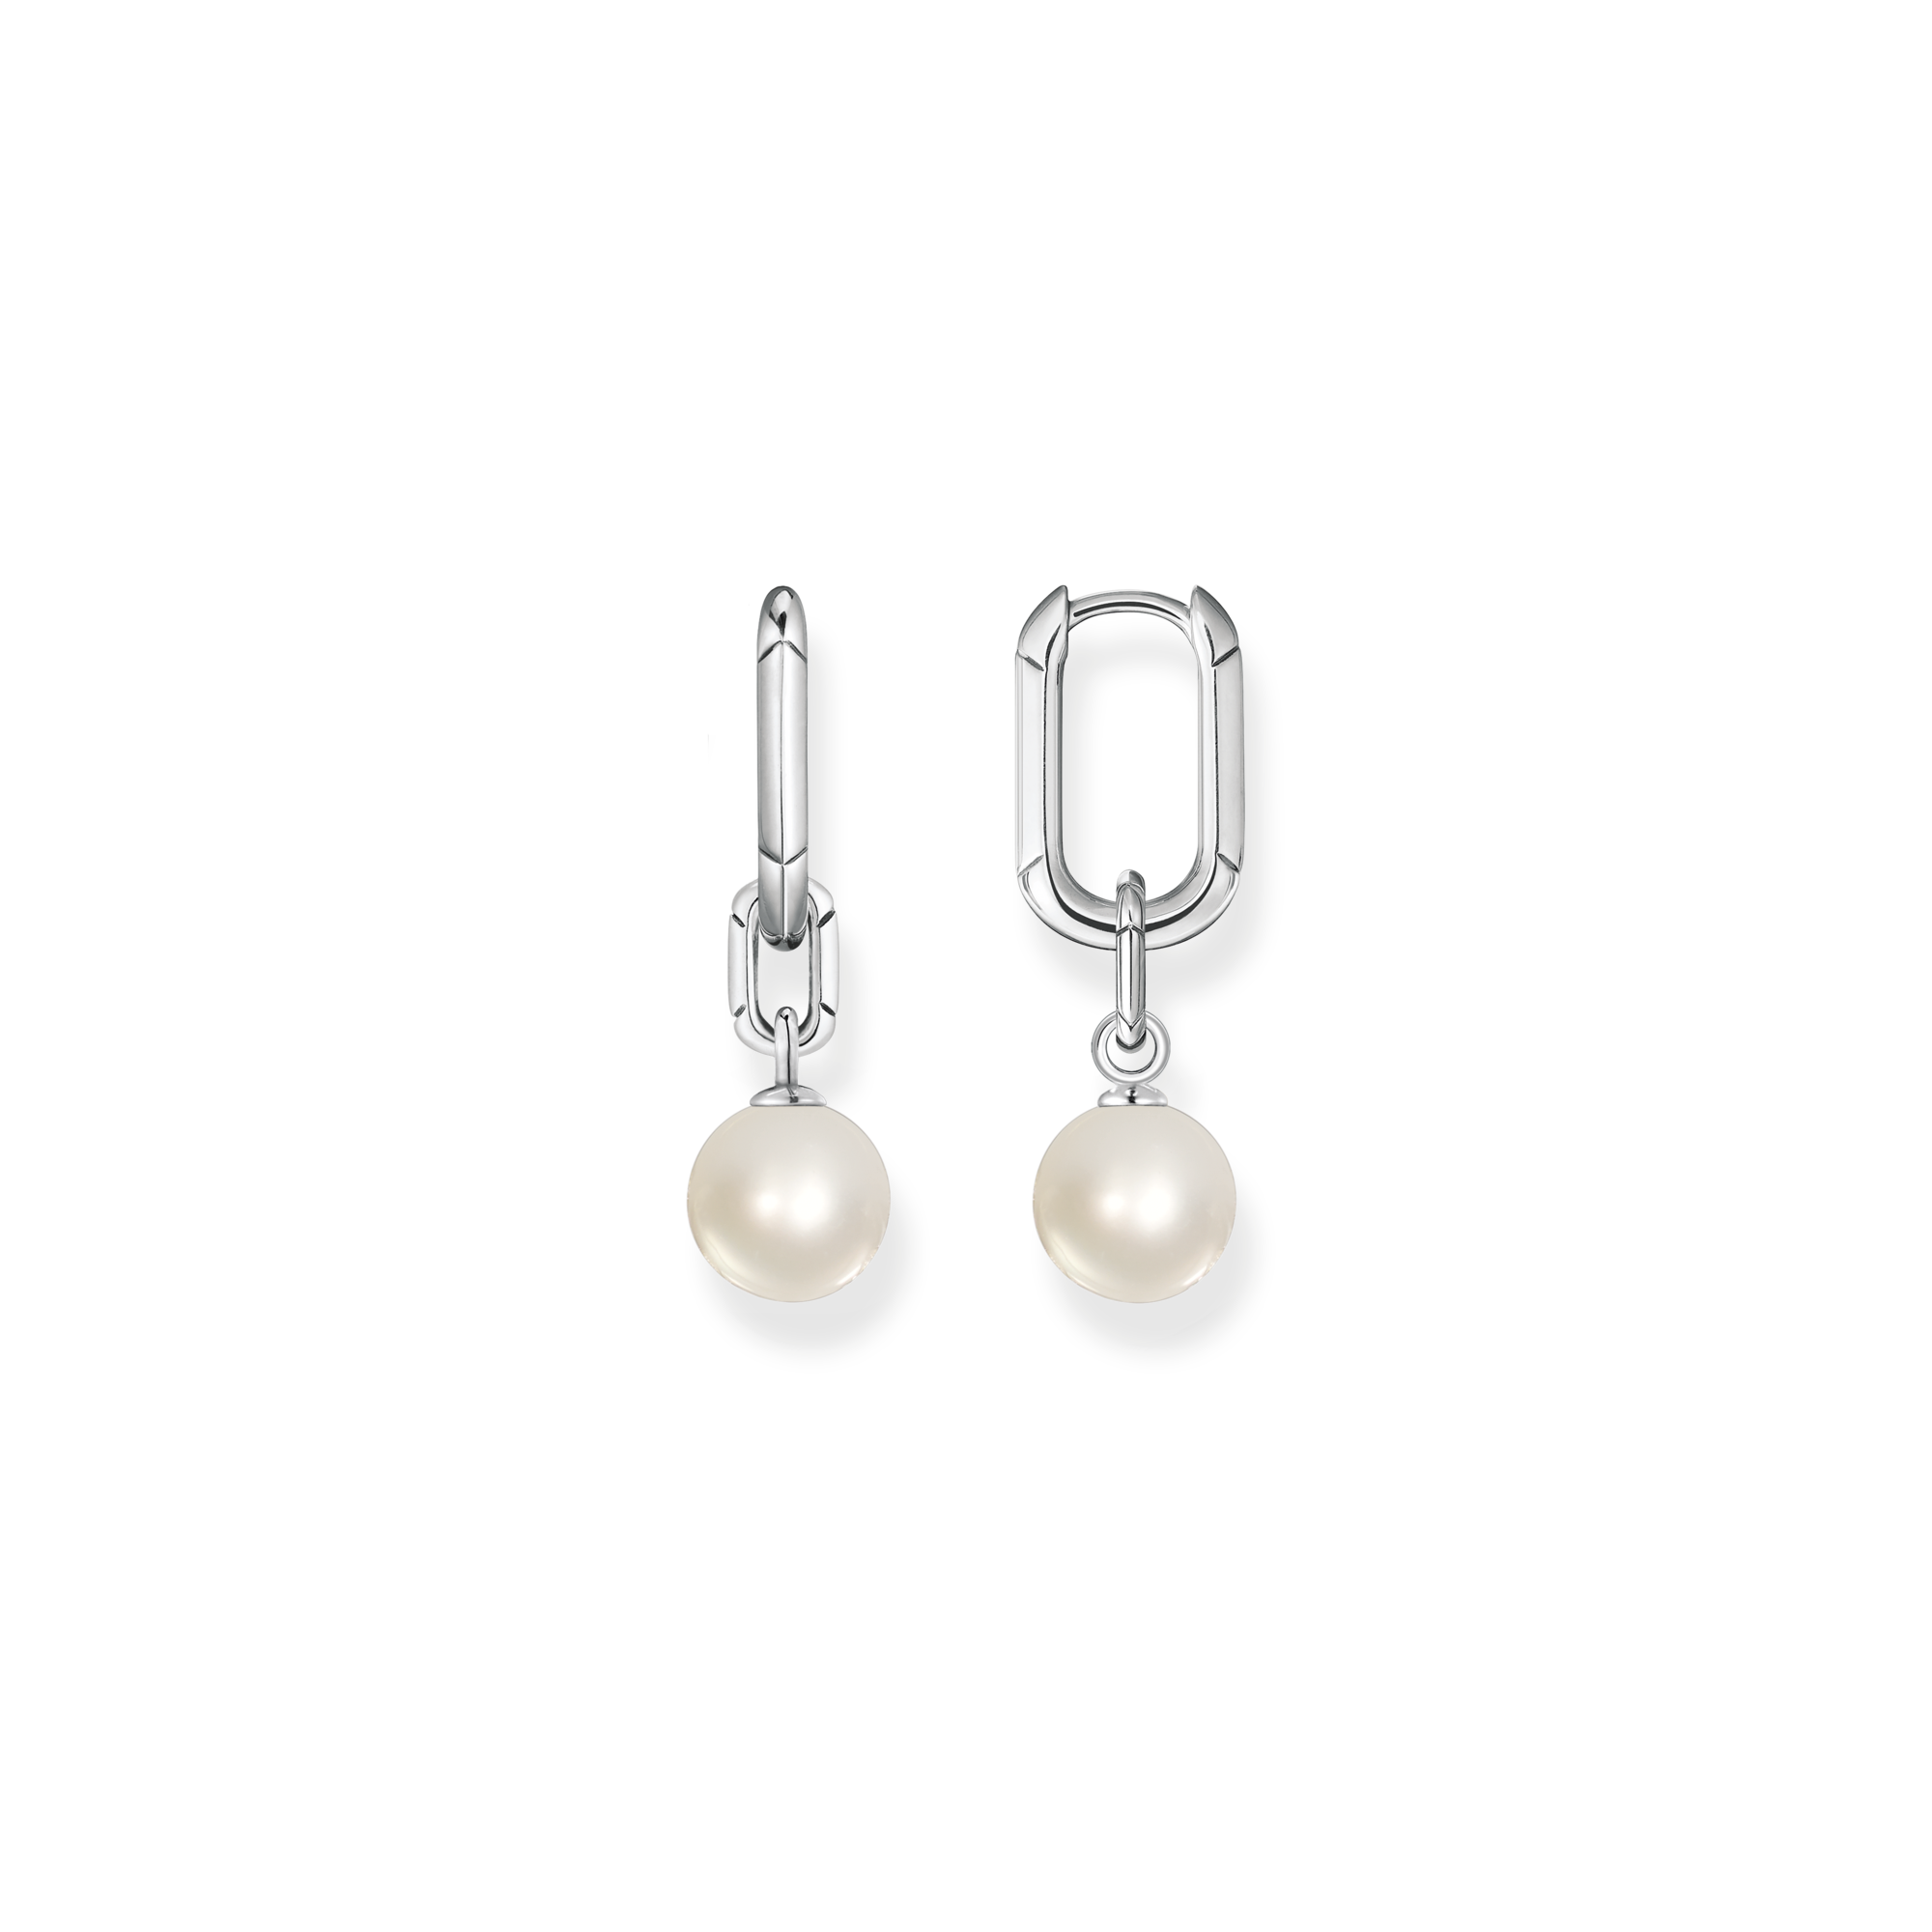 6 Pairs/Set Hoop Earrings Women Jewelry Circle Black White Charm Simple Black Kofun Earrings 